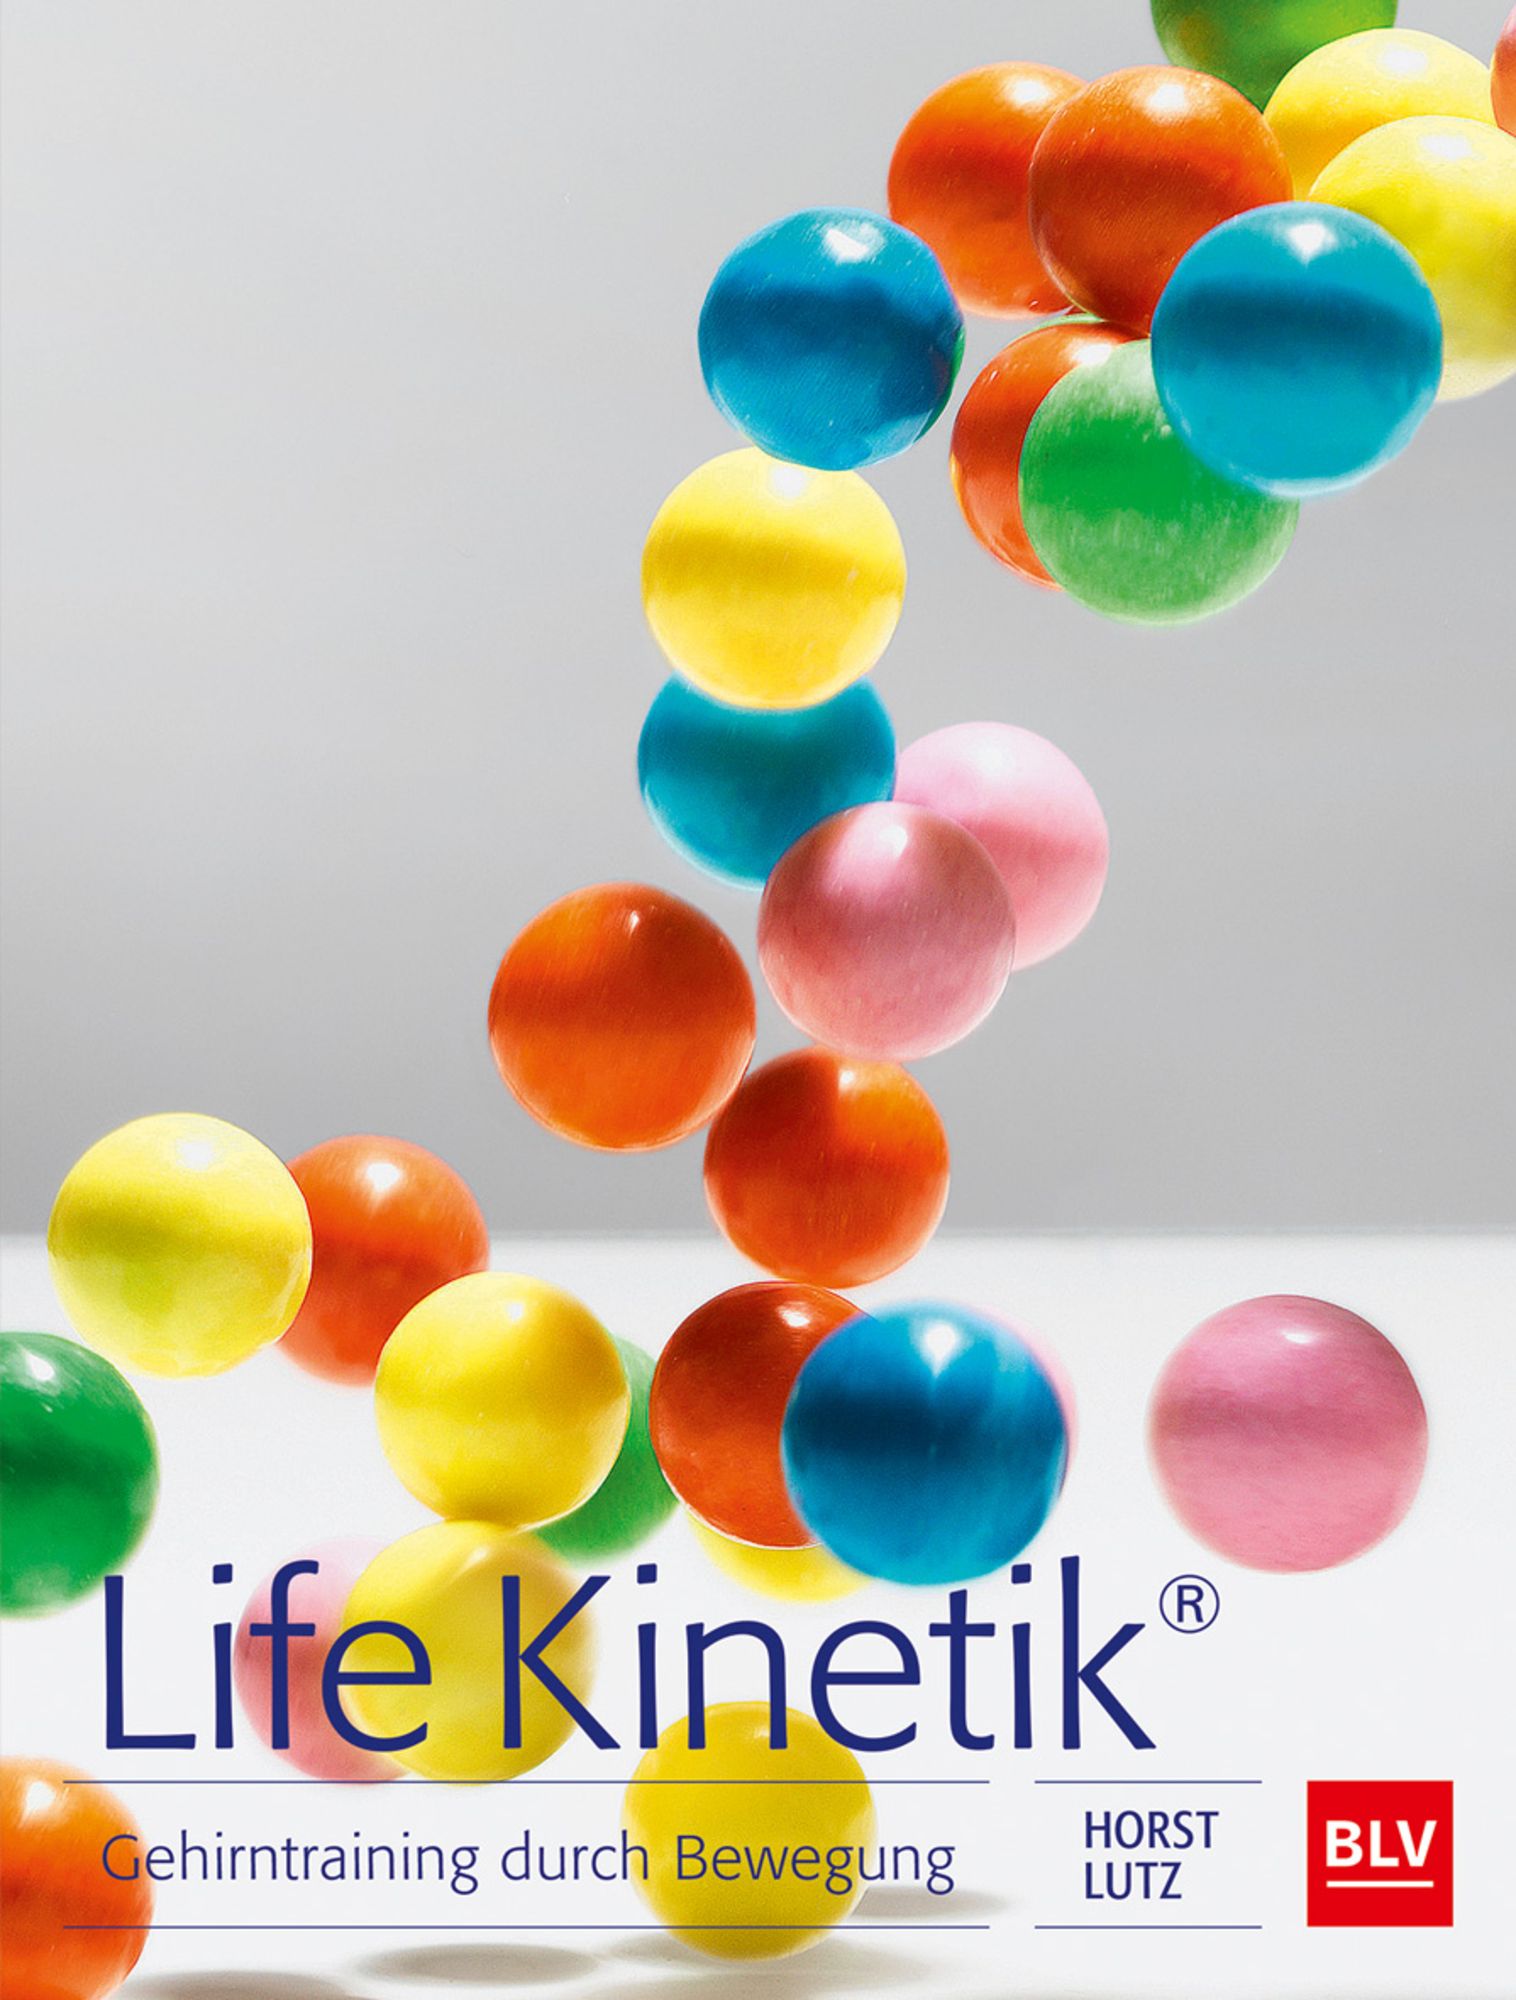 Horst Lutz auf LinkedIn: #lifekinetik #bisschenlifekinetiken